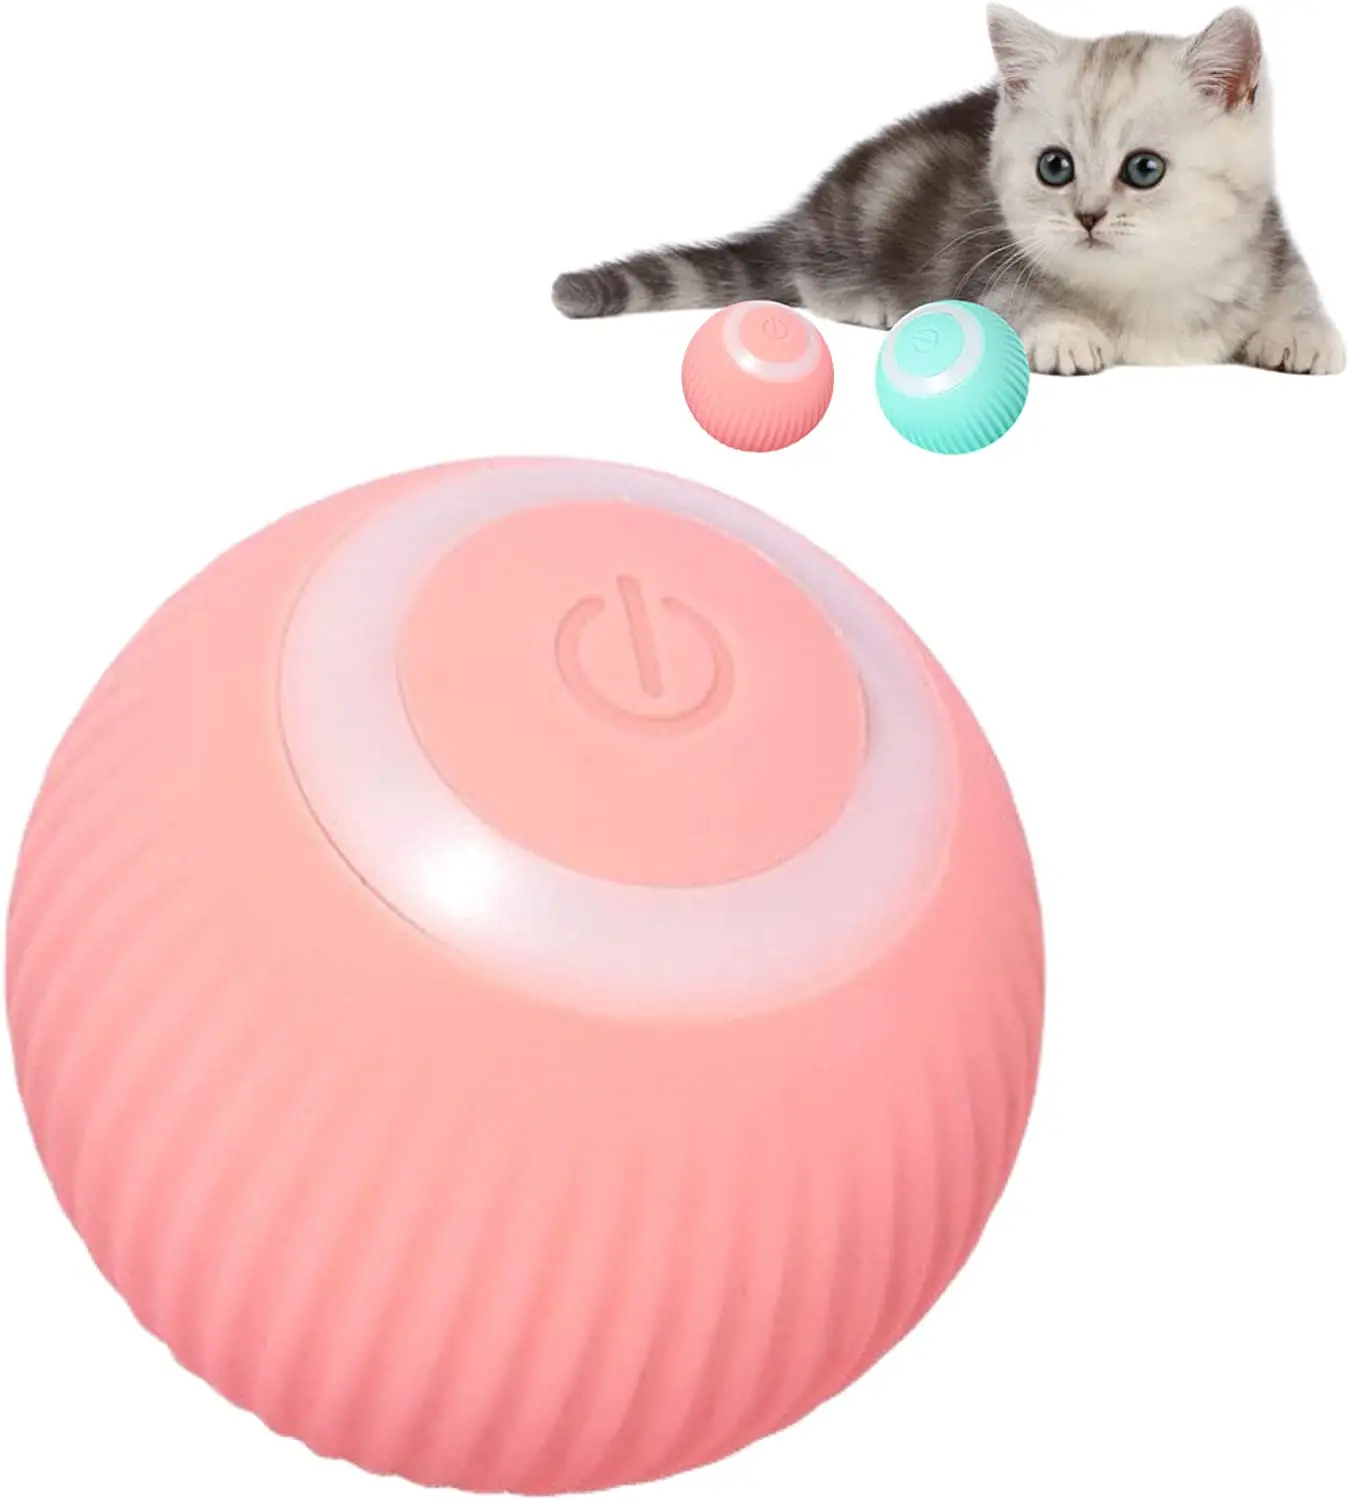 ATUBAN Inteligentní Interaktivní Hračka pro Kočky Míček,Automatické Pohybující Skákací Míč pro Vnitřní Kočky,Interaktivní Hračky pro Kočky, pro Vnitřní Kočky